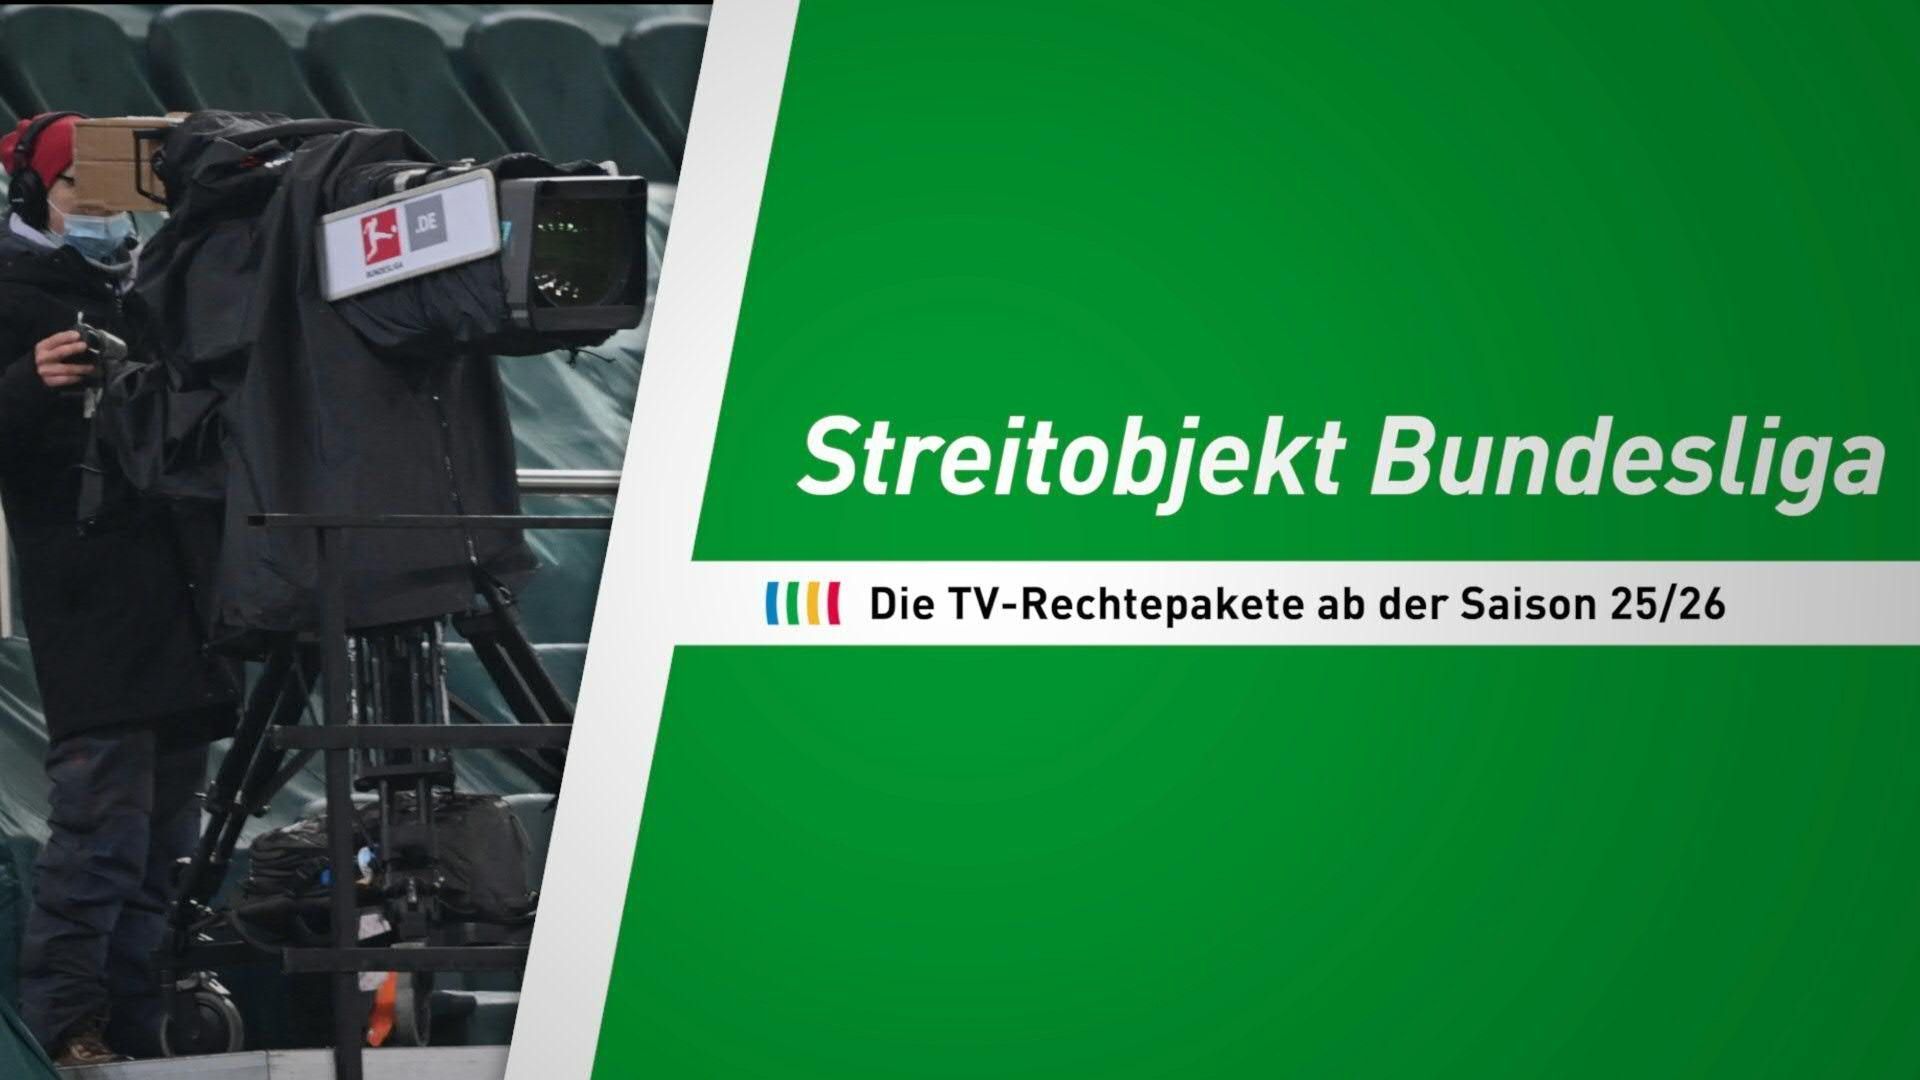 Streitobjekt Bundesliga: Die TV-Rechtepakete der DFL